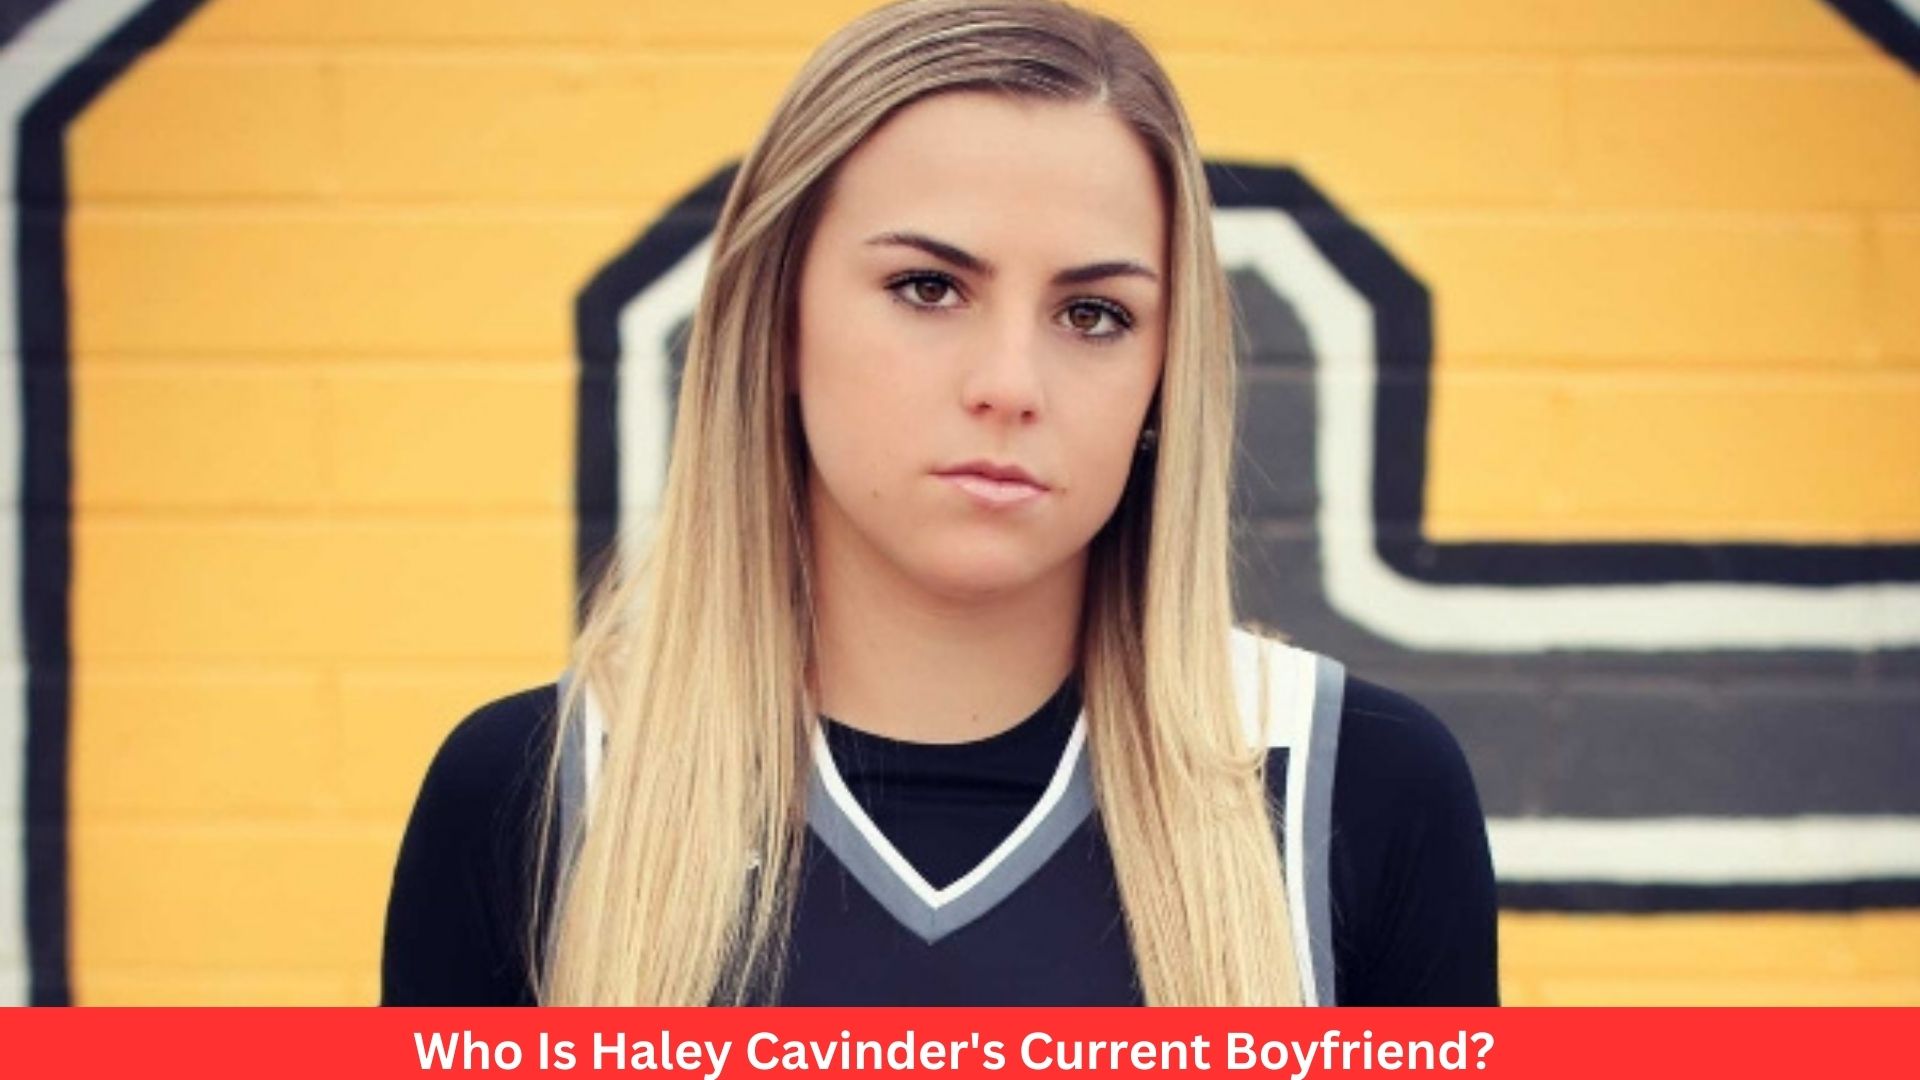 Who Is Haley Cavinder's Current Boyfriend?